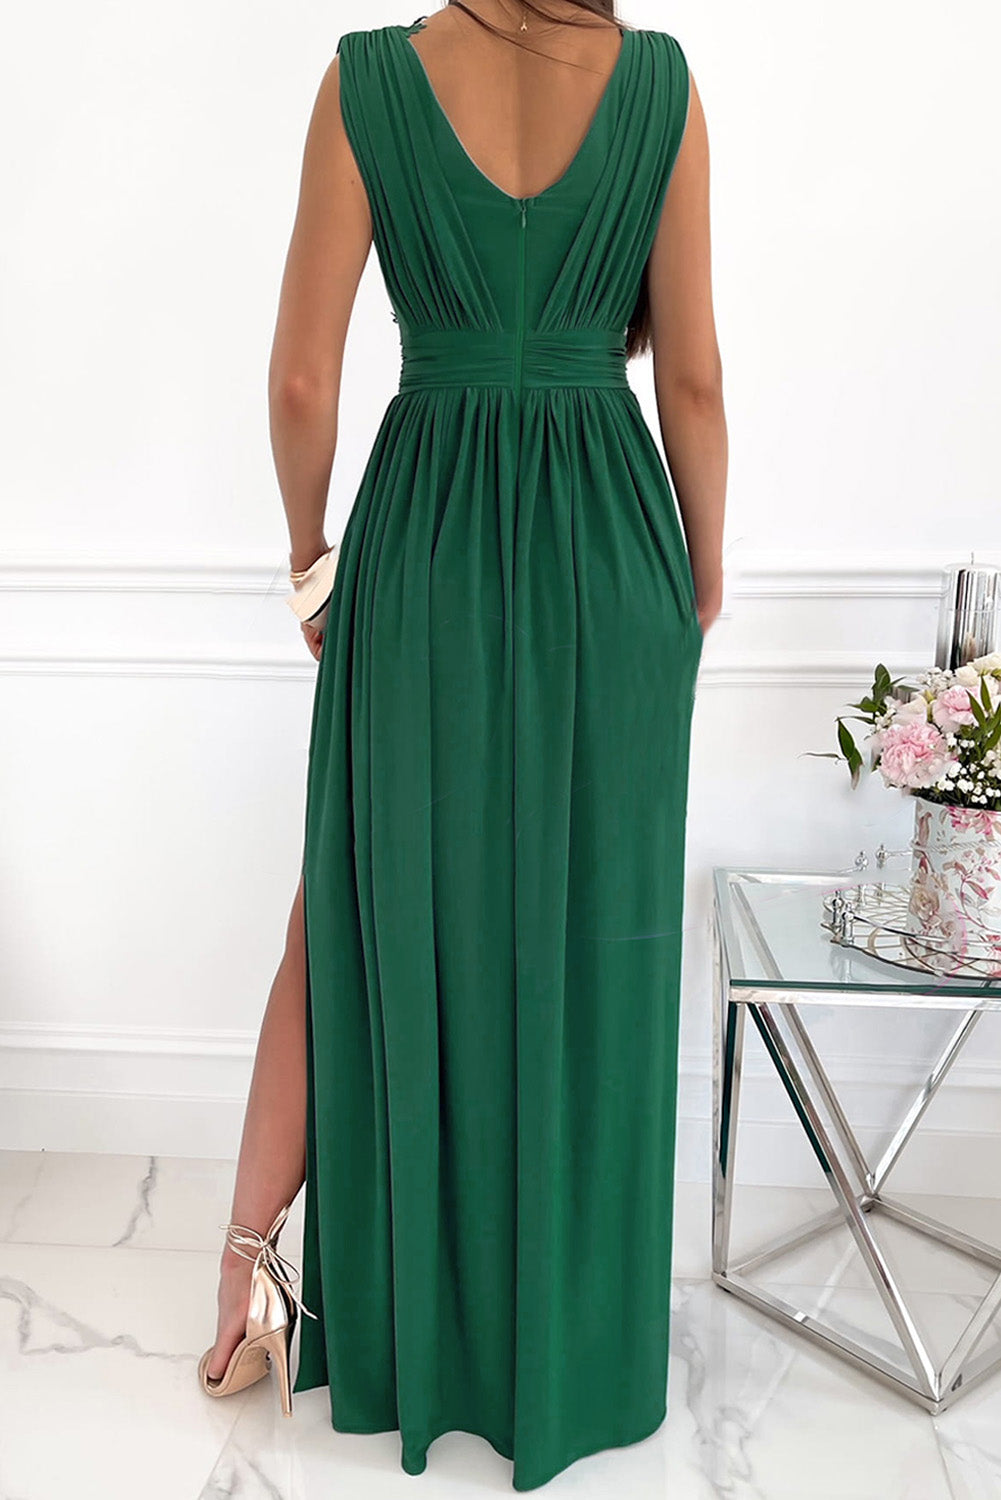 Green Crochet V Neck Maxi Dress Sleeveless Pleated High Waist Long Dress LC615797-9